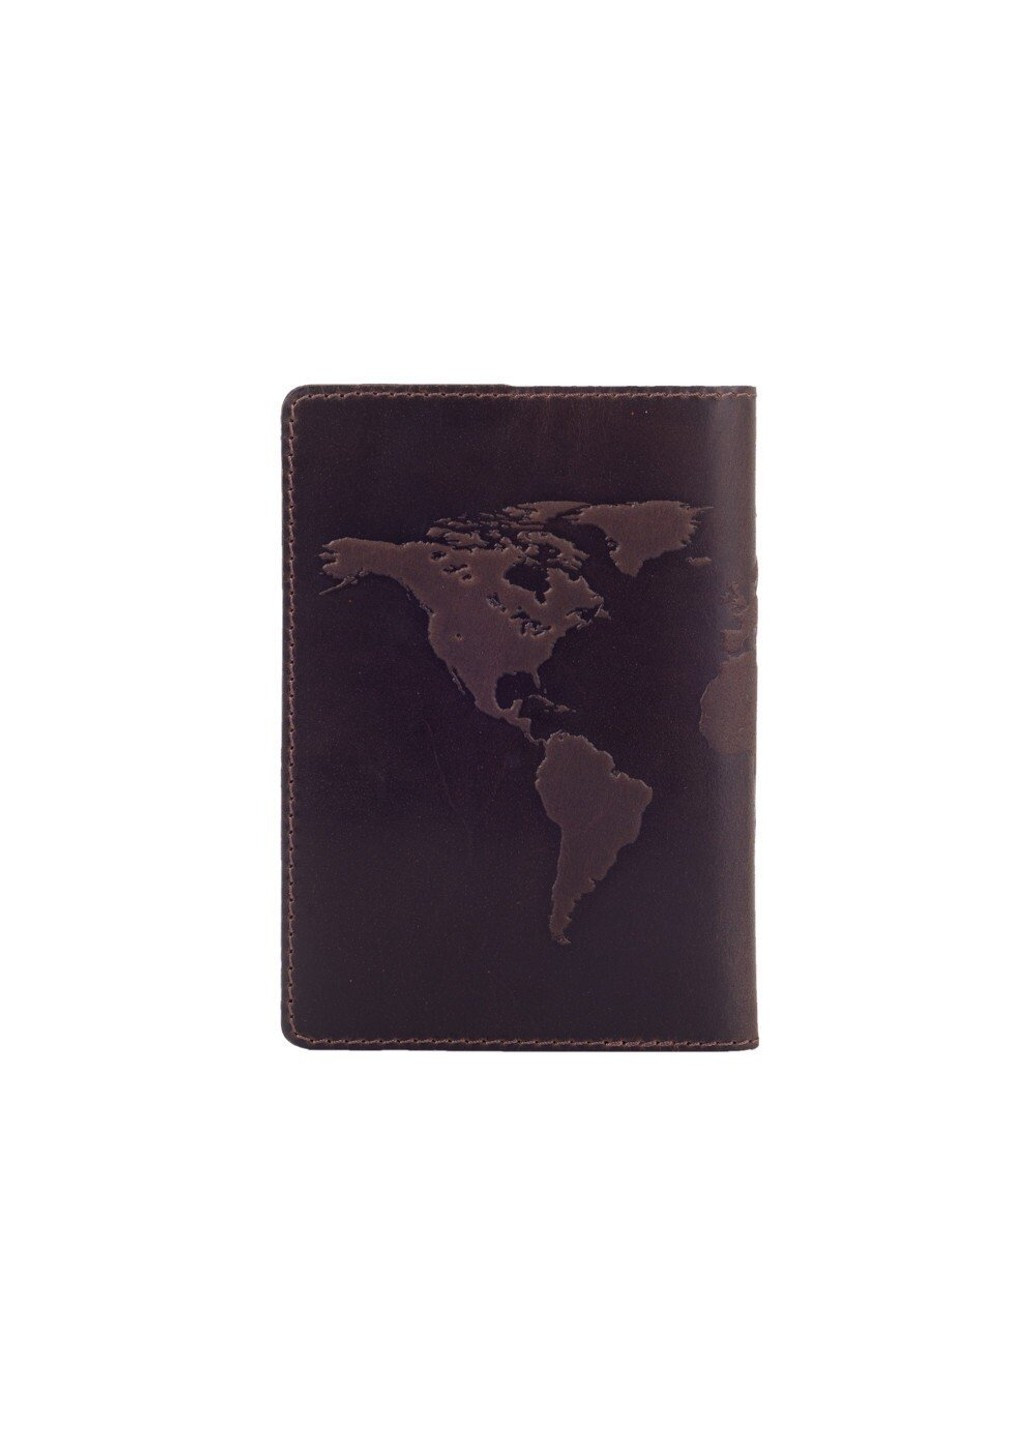 Обложка для паспорта из кожи HiArt PC-02 7 World Map коричневая Коричневый Hi Art (268371377)